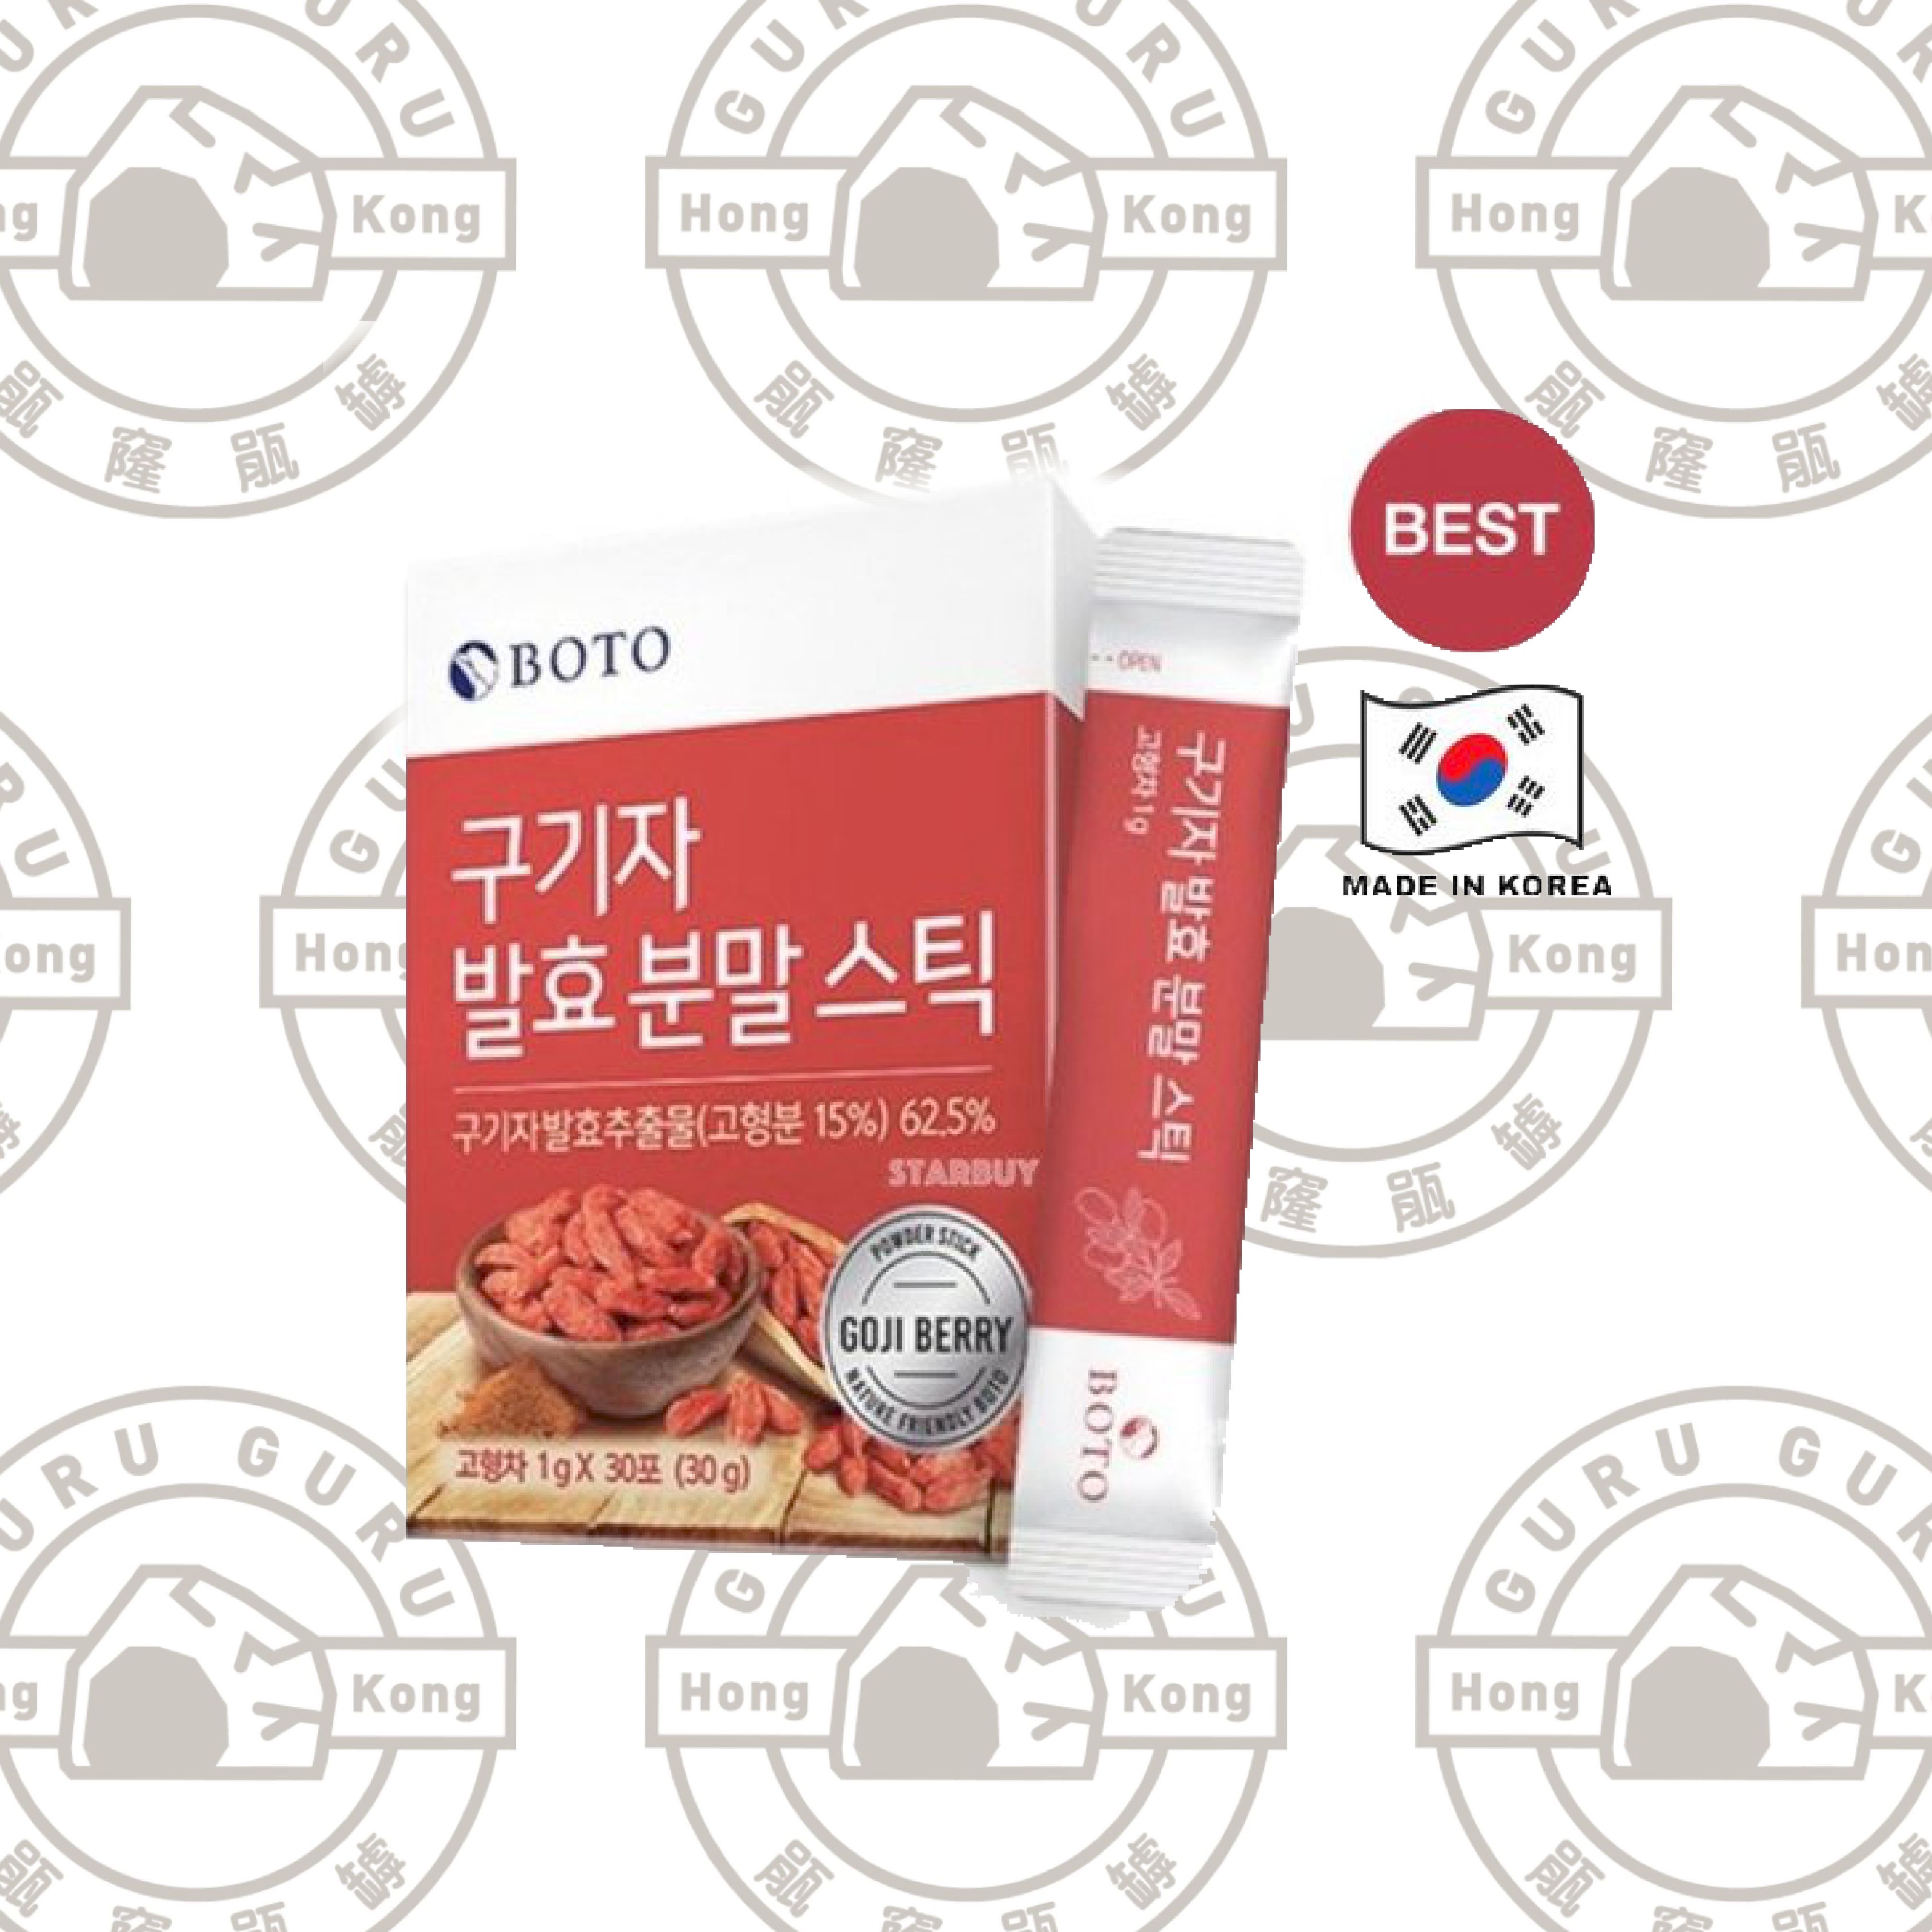 韓國Boto枸杞子發酵粉 30包